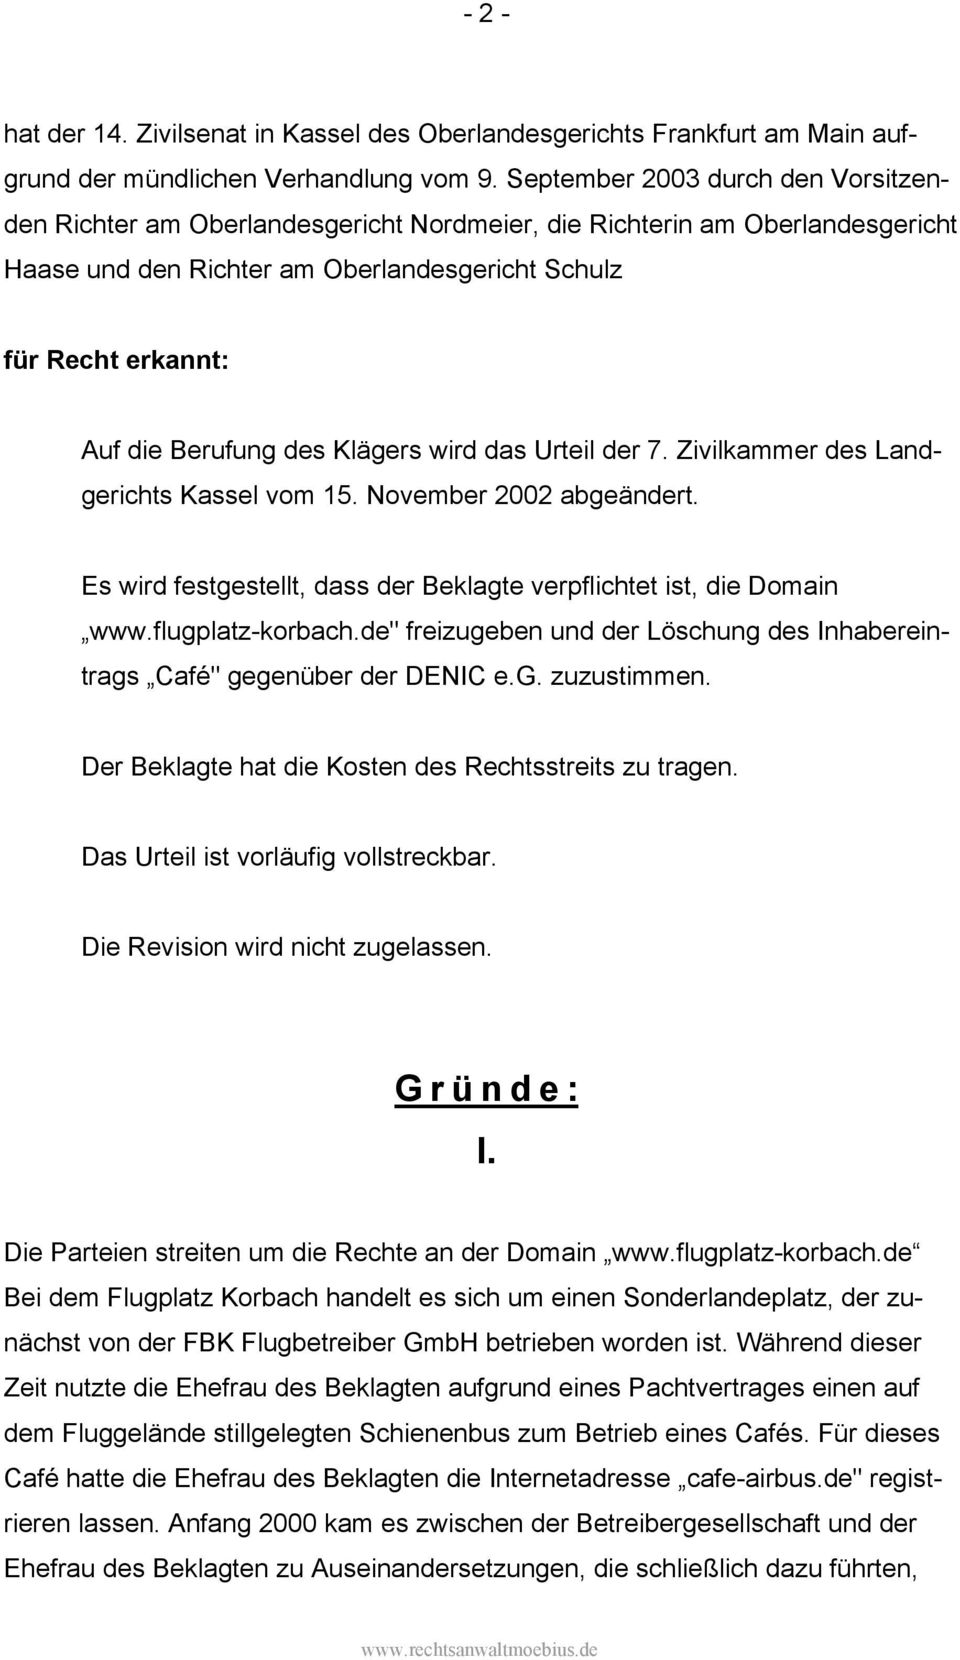 des Klägers wird das Urteil der 7. Zivilkammer des Landgerichts Kassel vom 15. November 2002 abgeändert. Es wird festgestellt, dass der Beklagte verpflichtet ist, die Domain www.flugplatz-korbach.